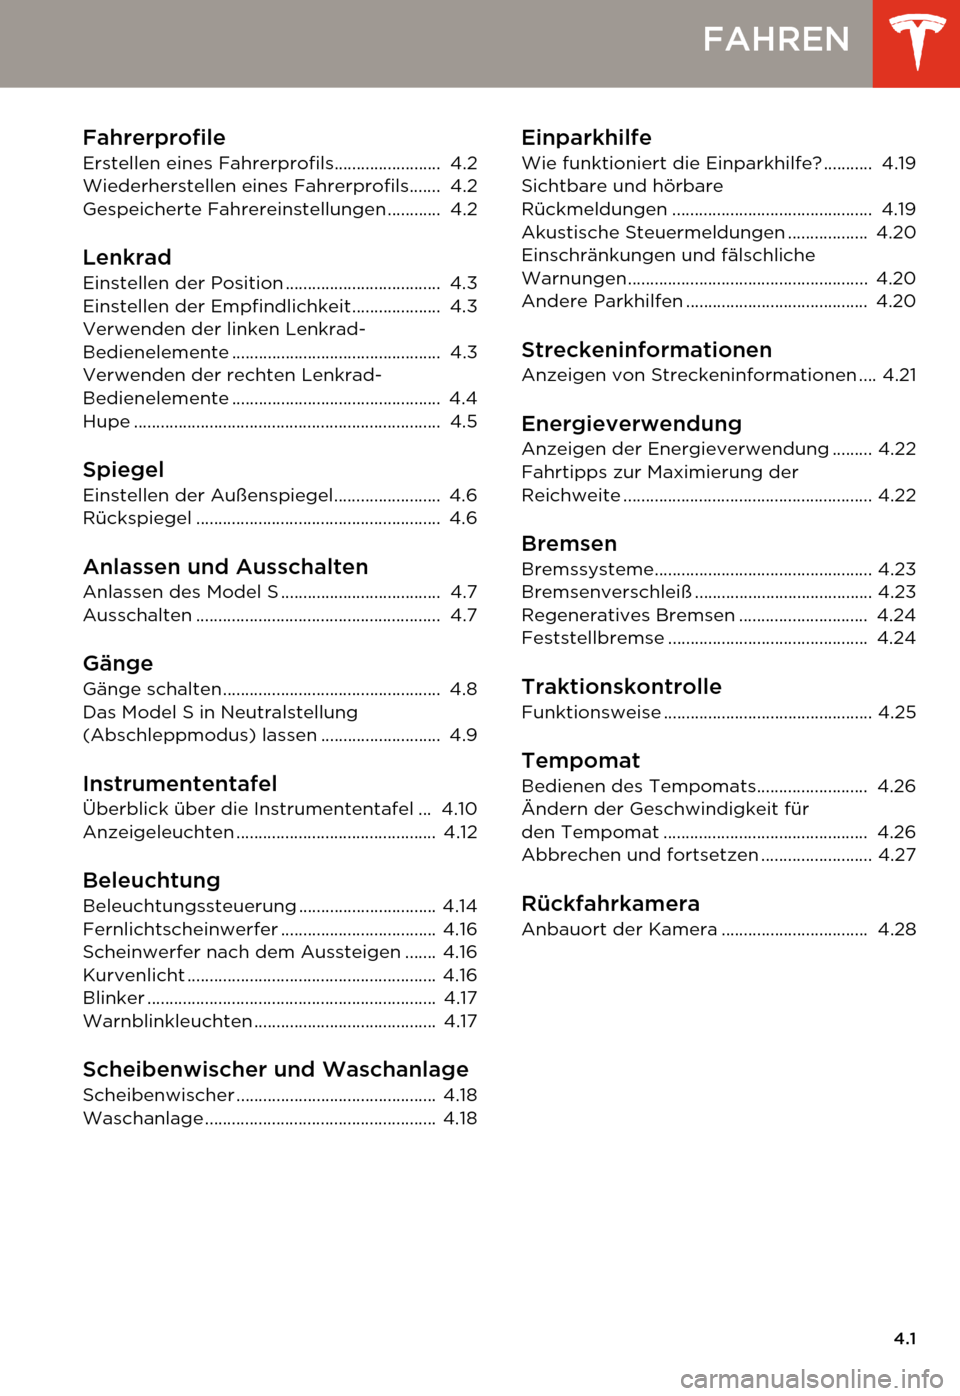 TESLA MODEL S 2014  Betriebsanleitung (in German) 4.1
FAHREN
Fahrerprofile
Erstellen eines Fahrerprofils........................  4.2
Wiederherstellen eines Fahrerprofils.......  4.2
Gespeicherte Fahrereinstellungen ............  4.2
Lenkrad
Einstell